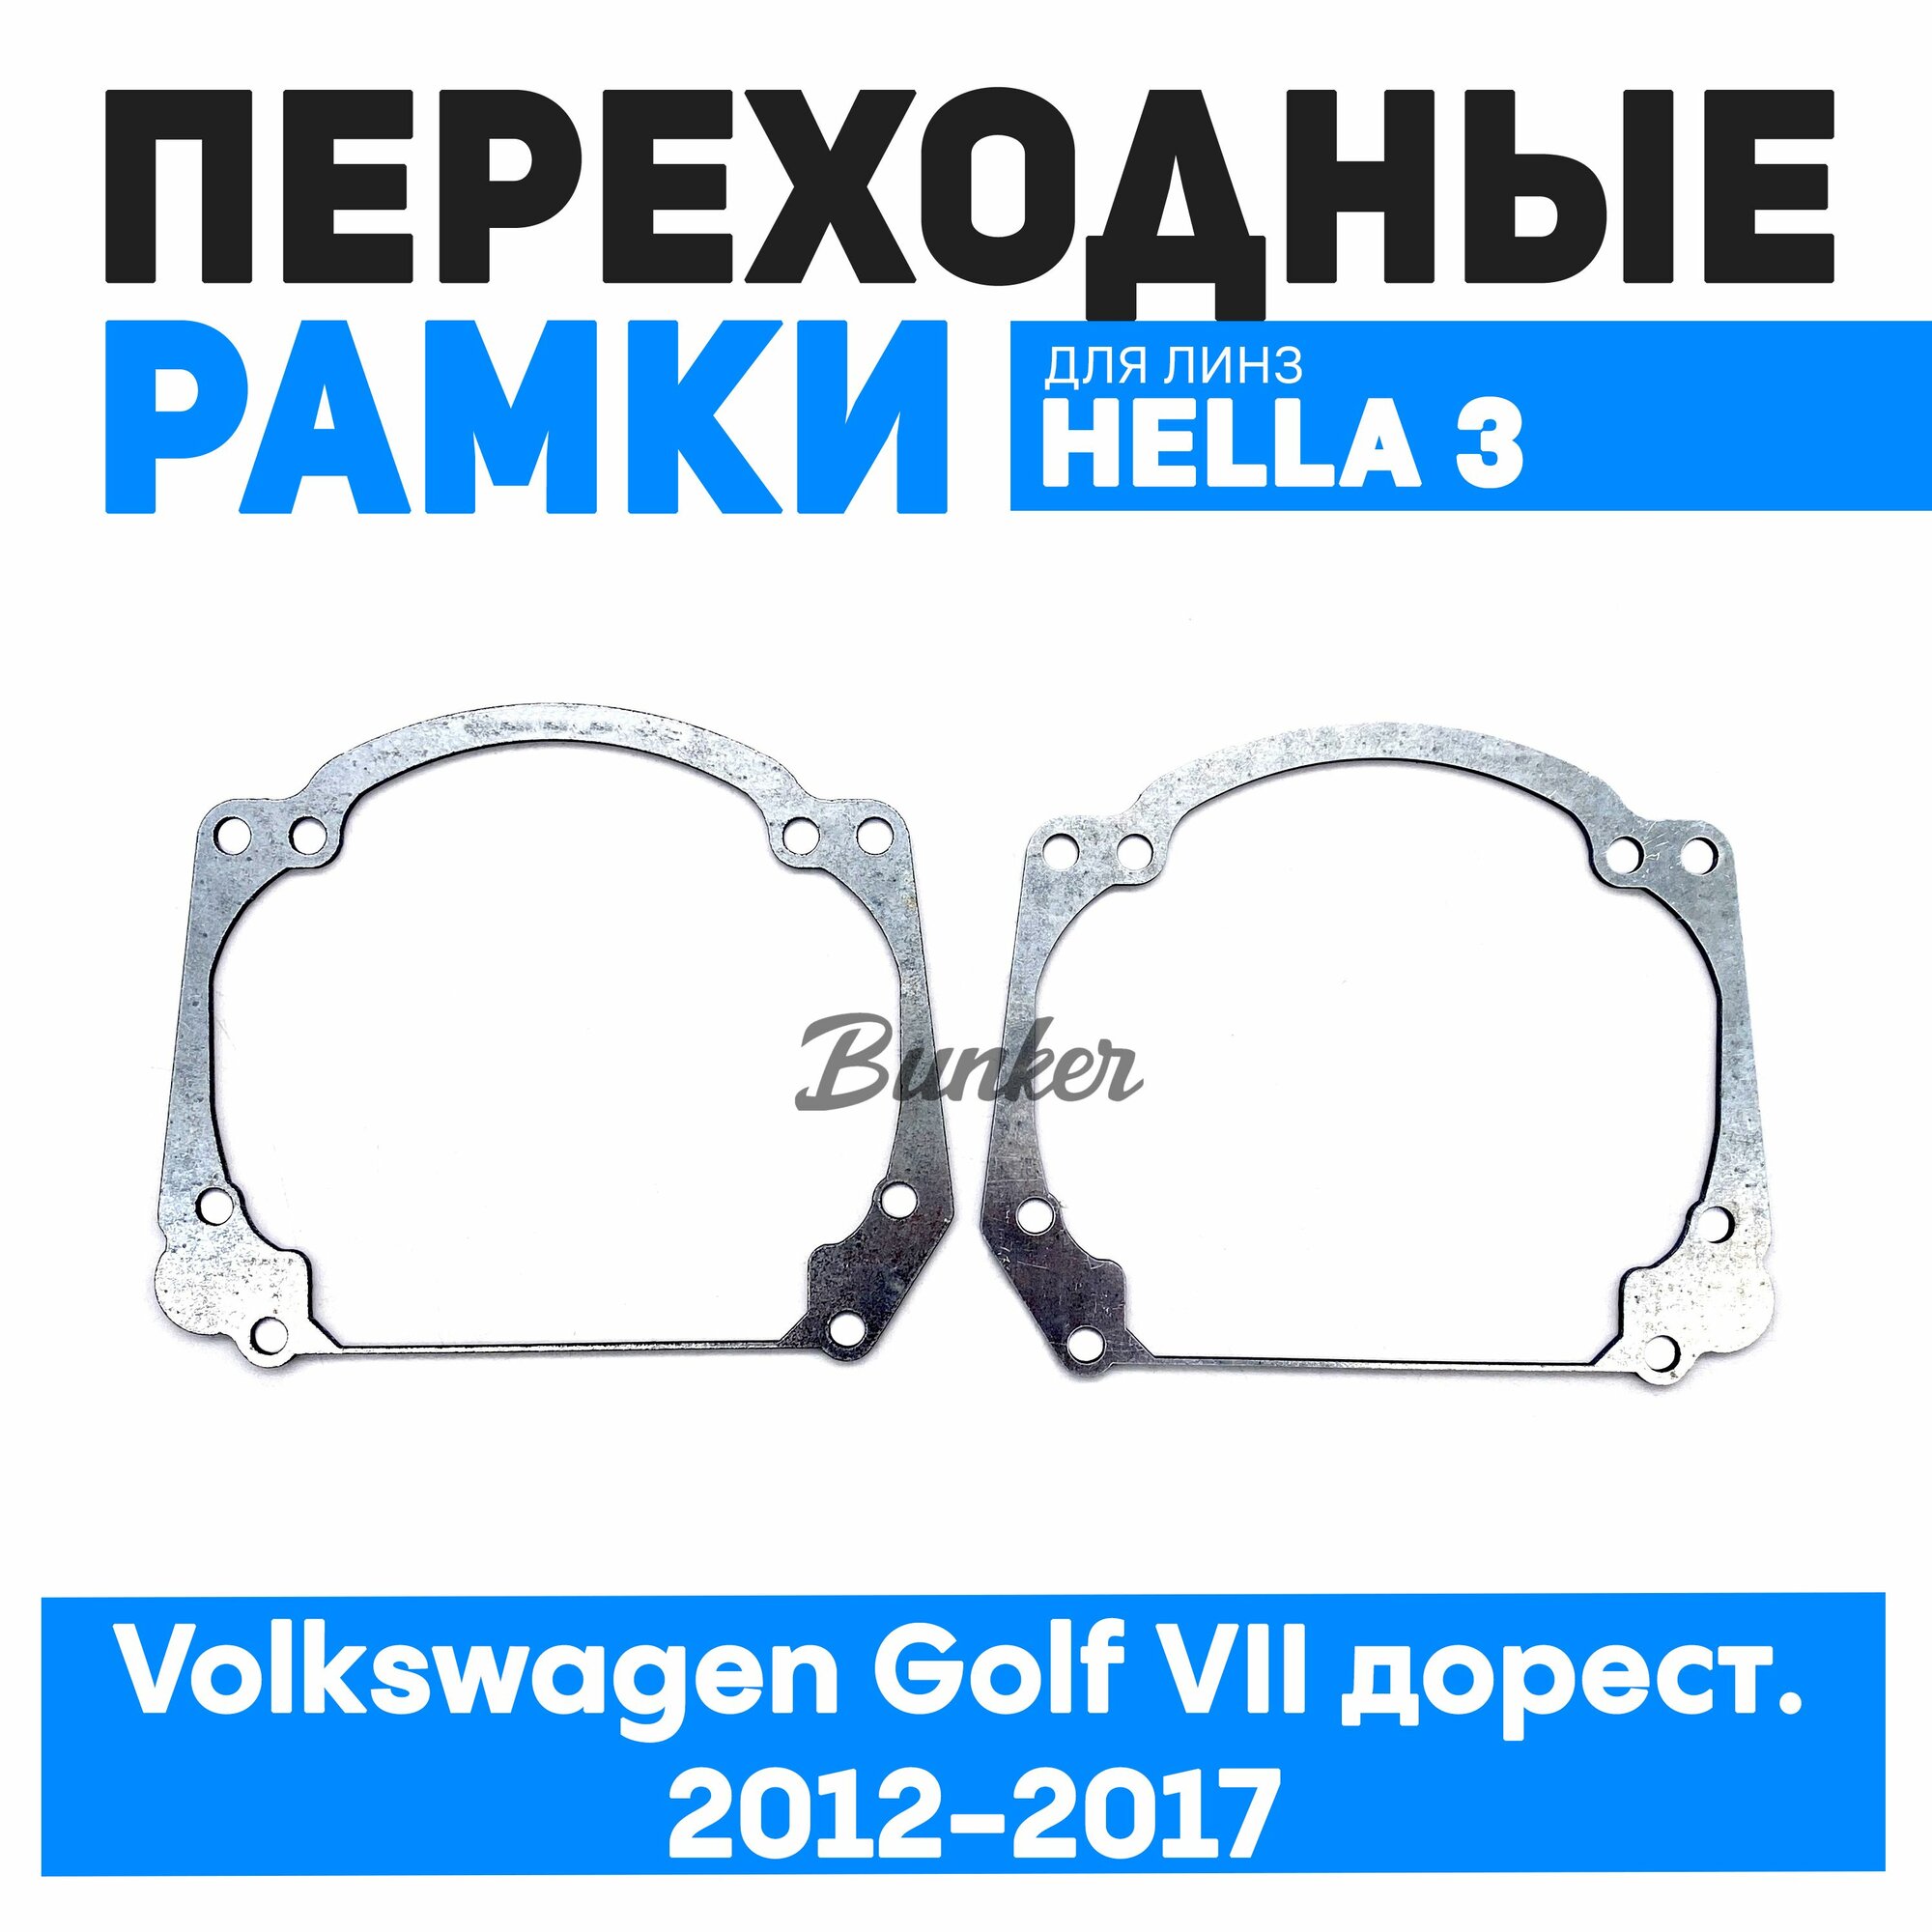 Переходные рамки для замены линз Volkswagen Golf VII дорест. 2012-2017